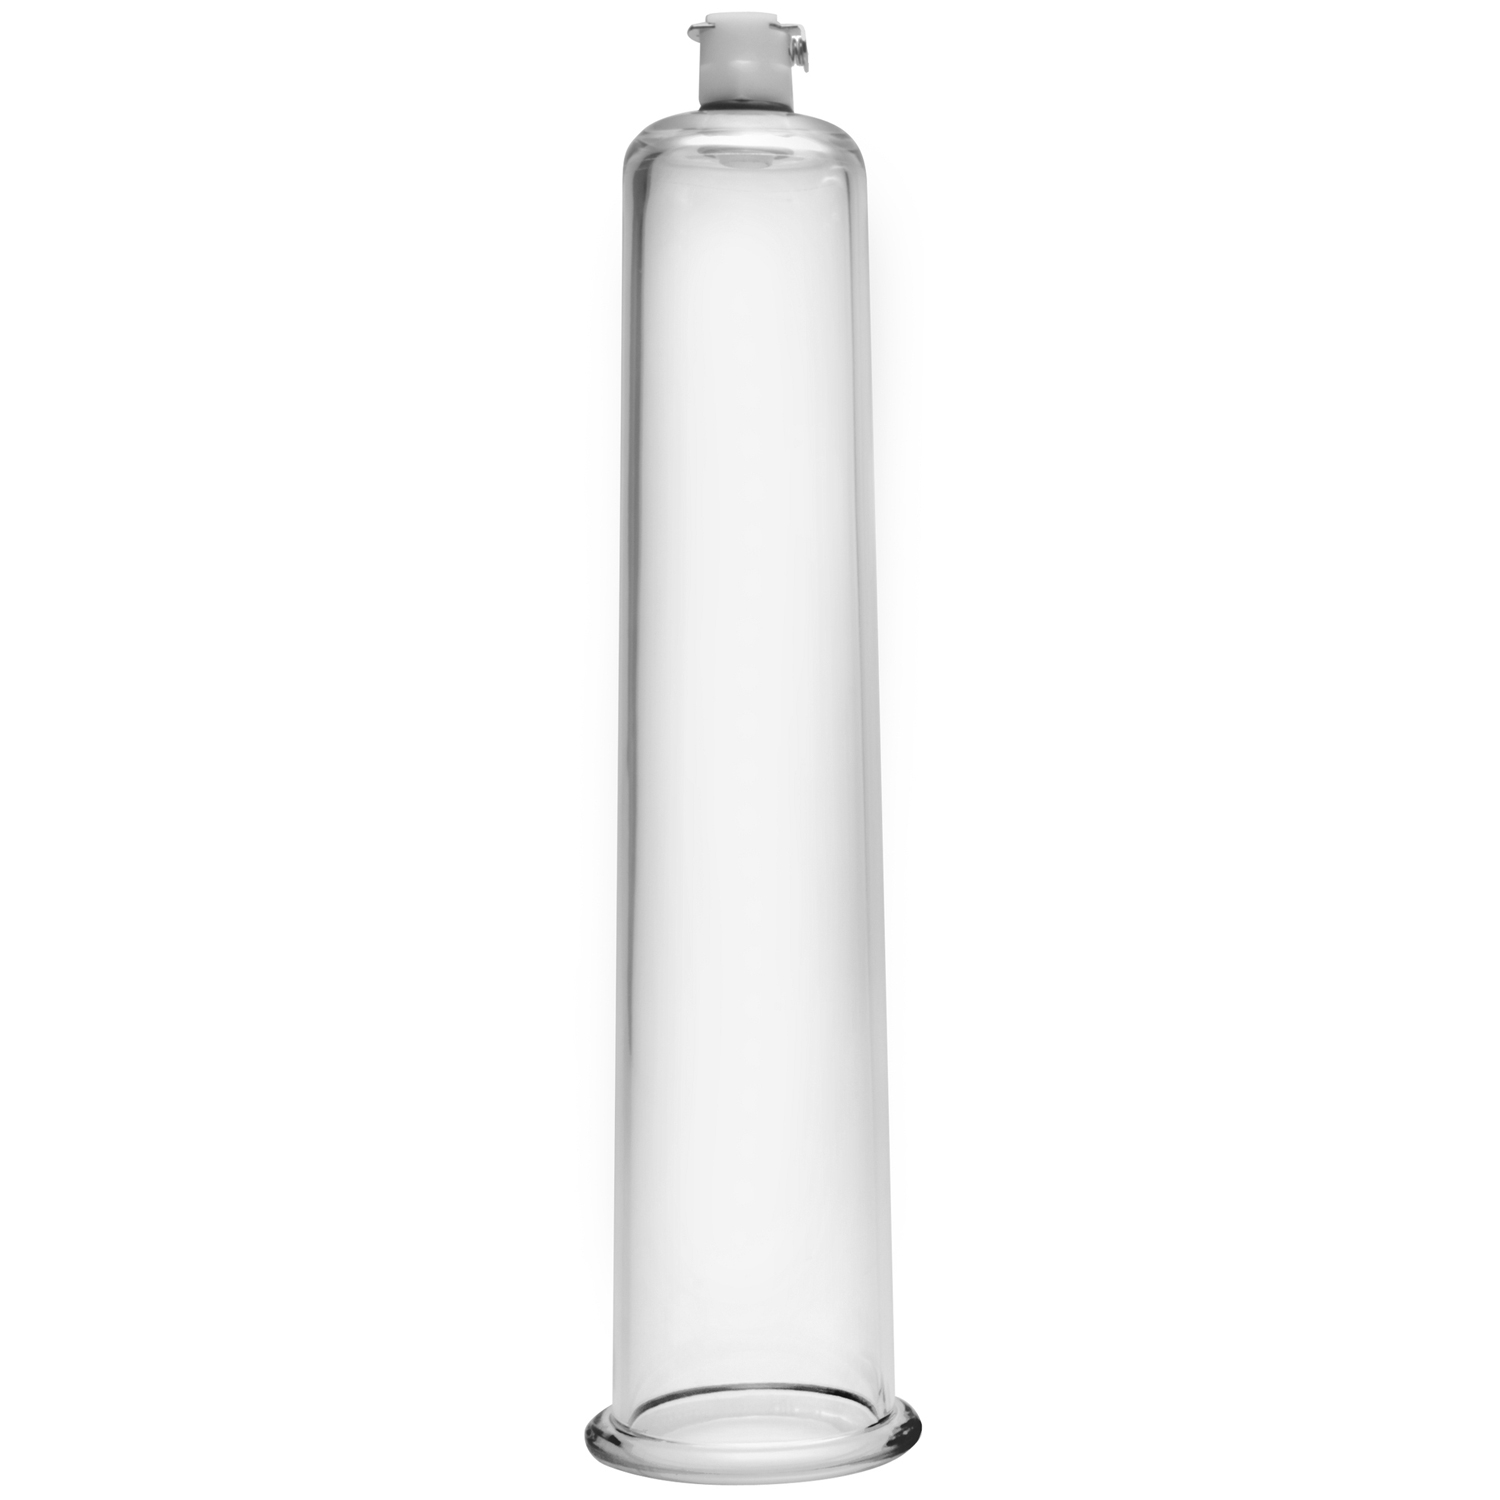 Size Matters Penispumpe Cylinder        - Klar - 45 mm